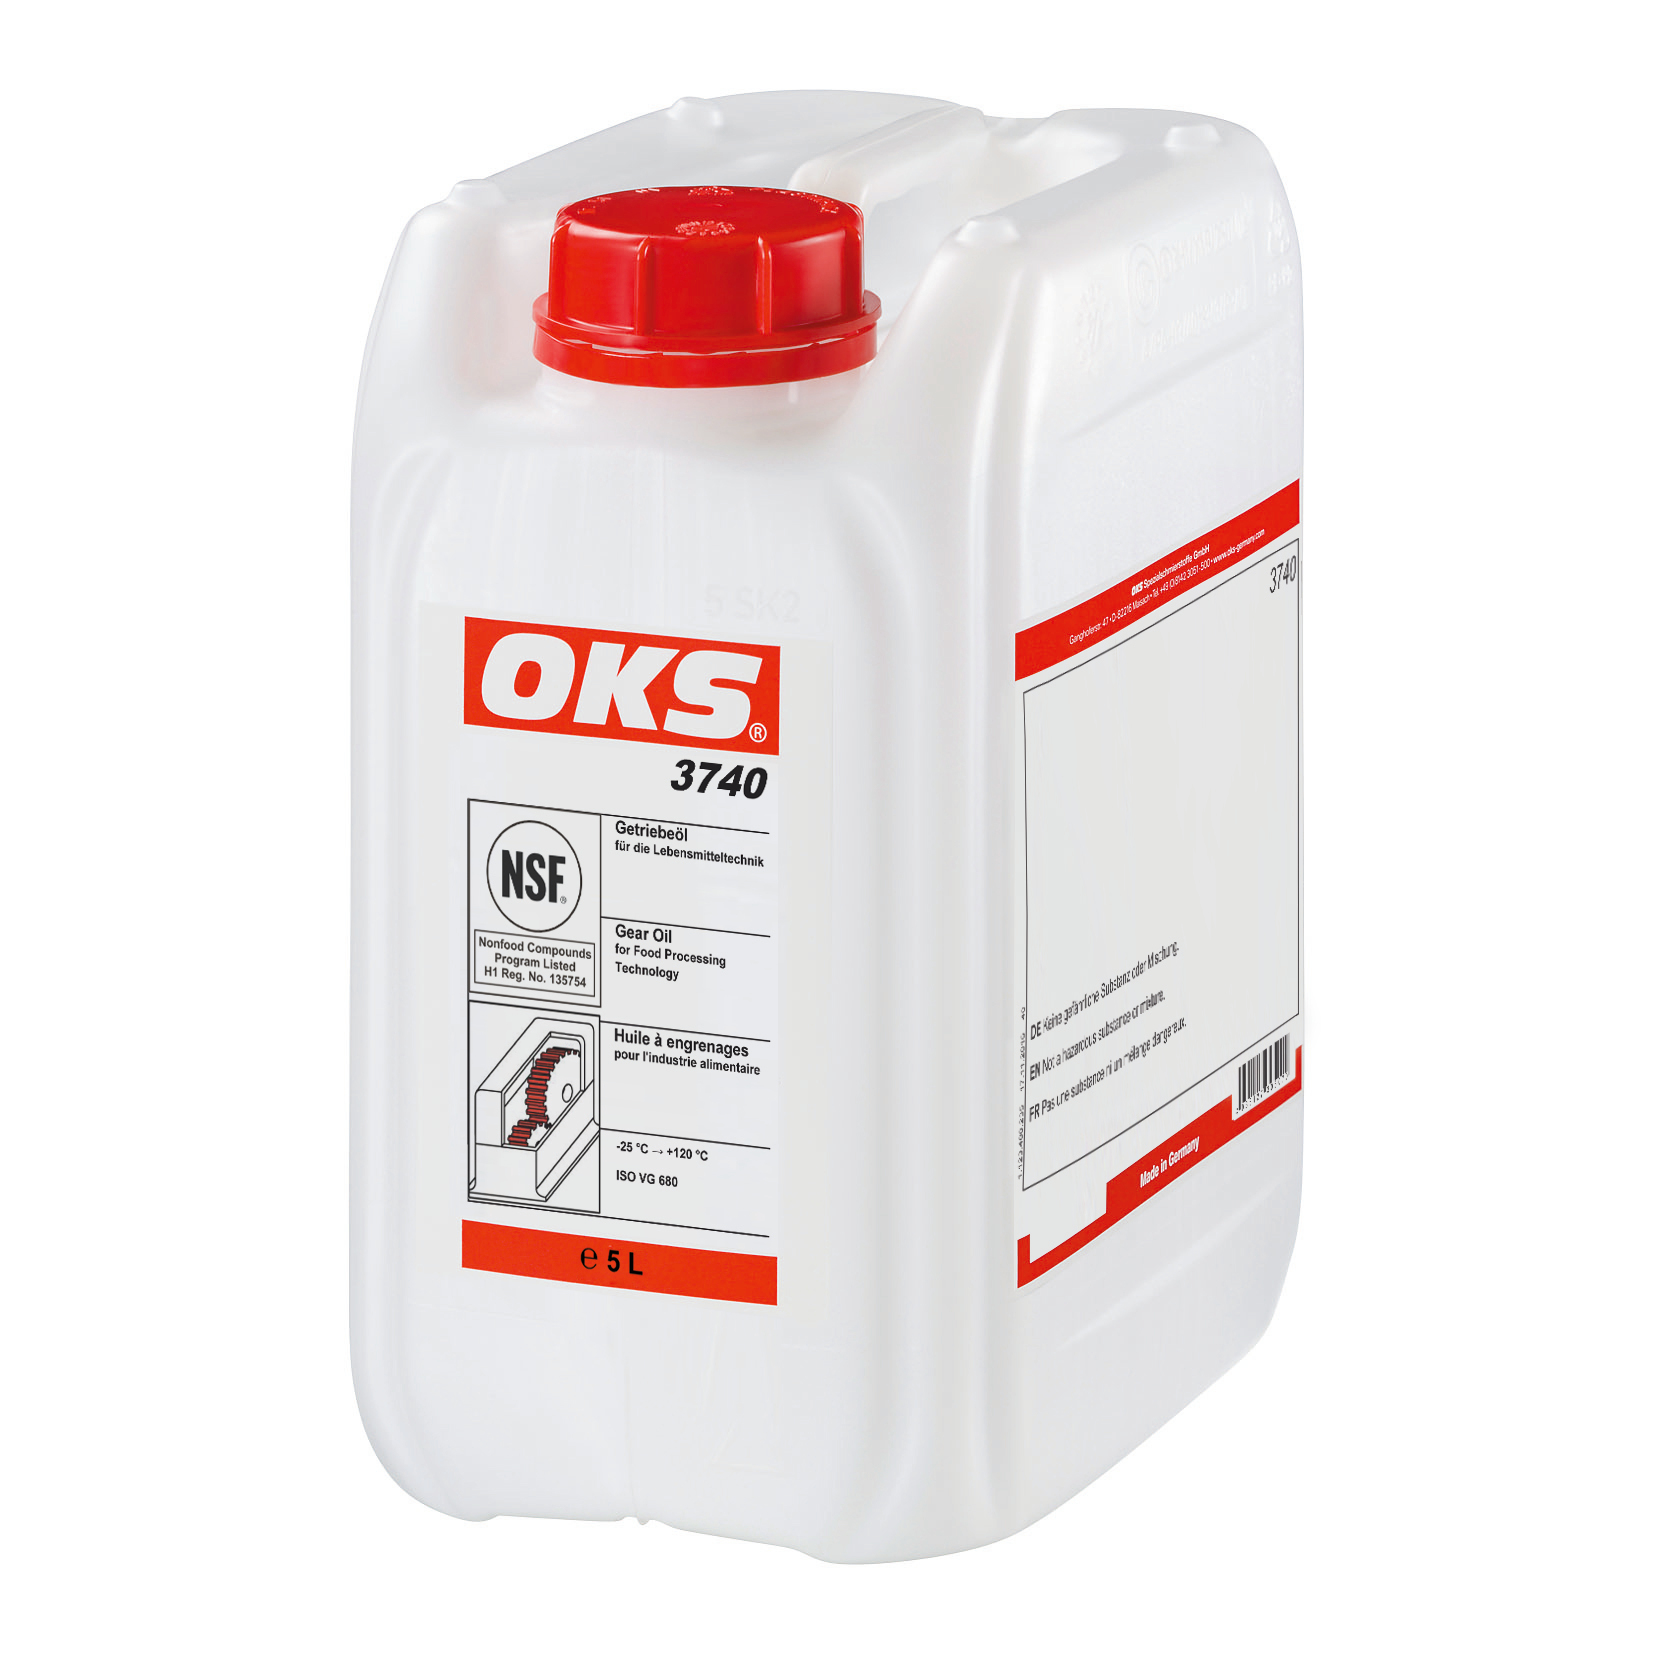 OKS3740-5 Volledig synthetische olie van ISO VG-klasse 680 voor smering van tandwieloverbrengingen en andere machinedelen in delevensmiddelentechniek.